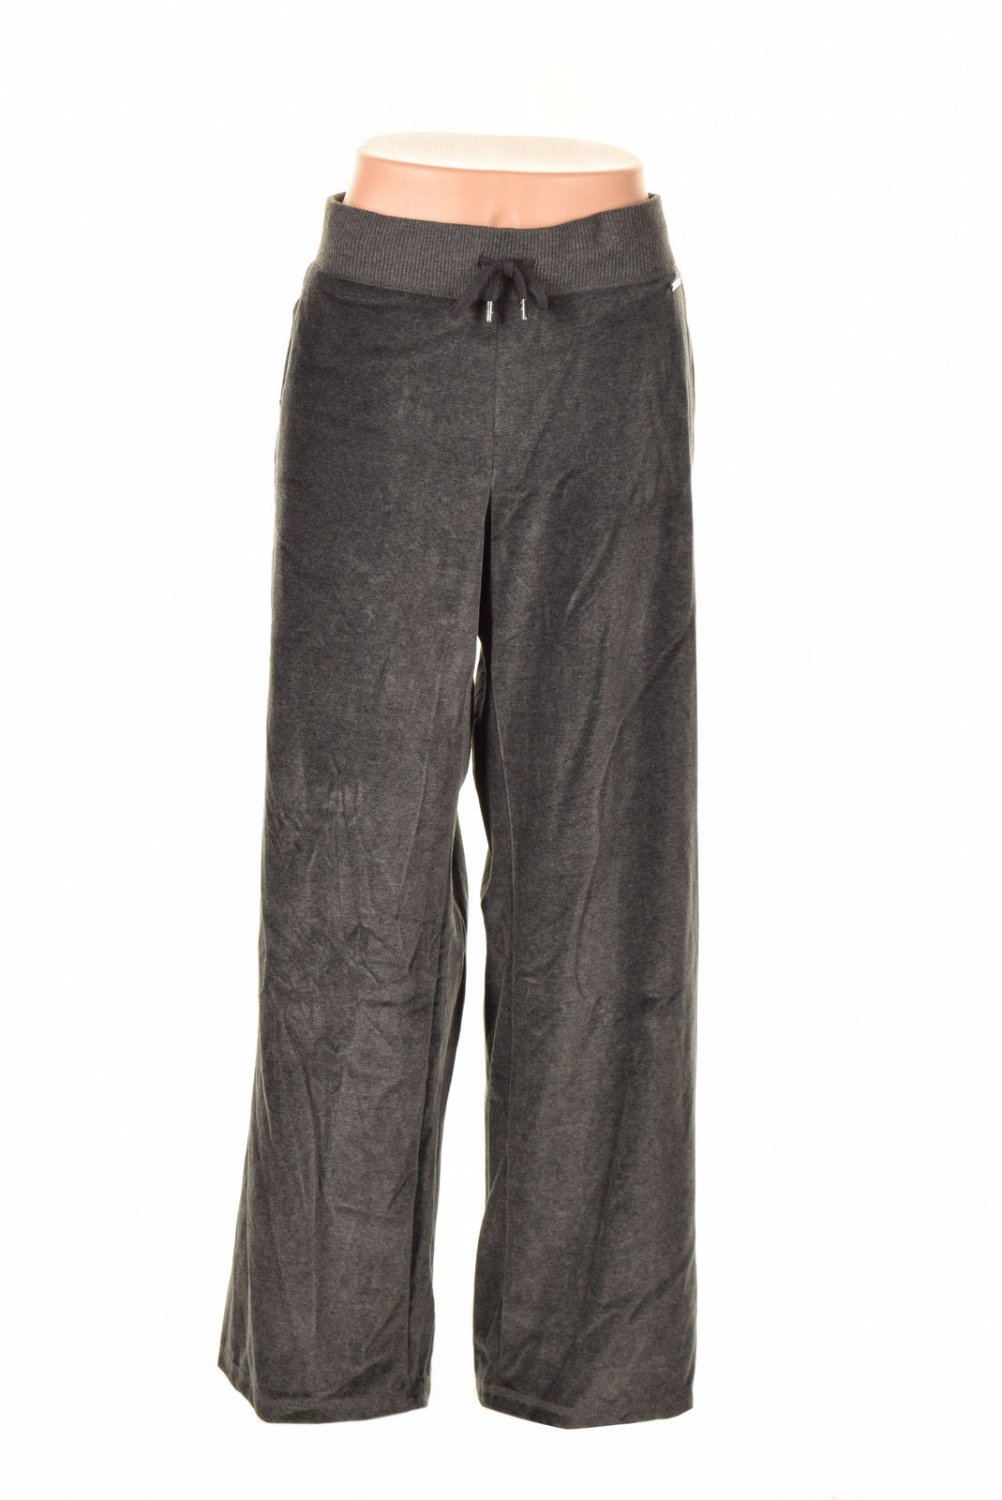 Michael Kors Velour Drawstring Pants Derby Grey Xl ( Size ) Women'S ...